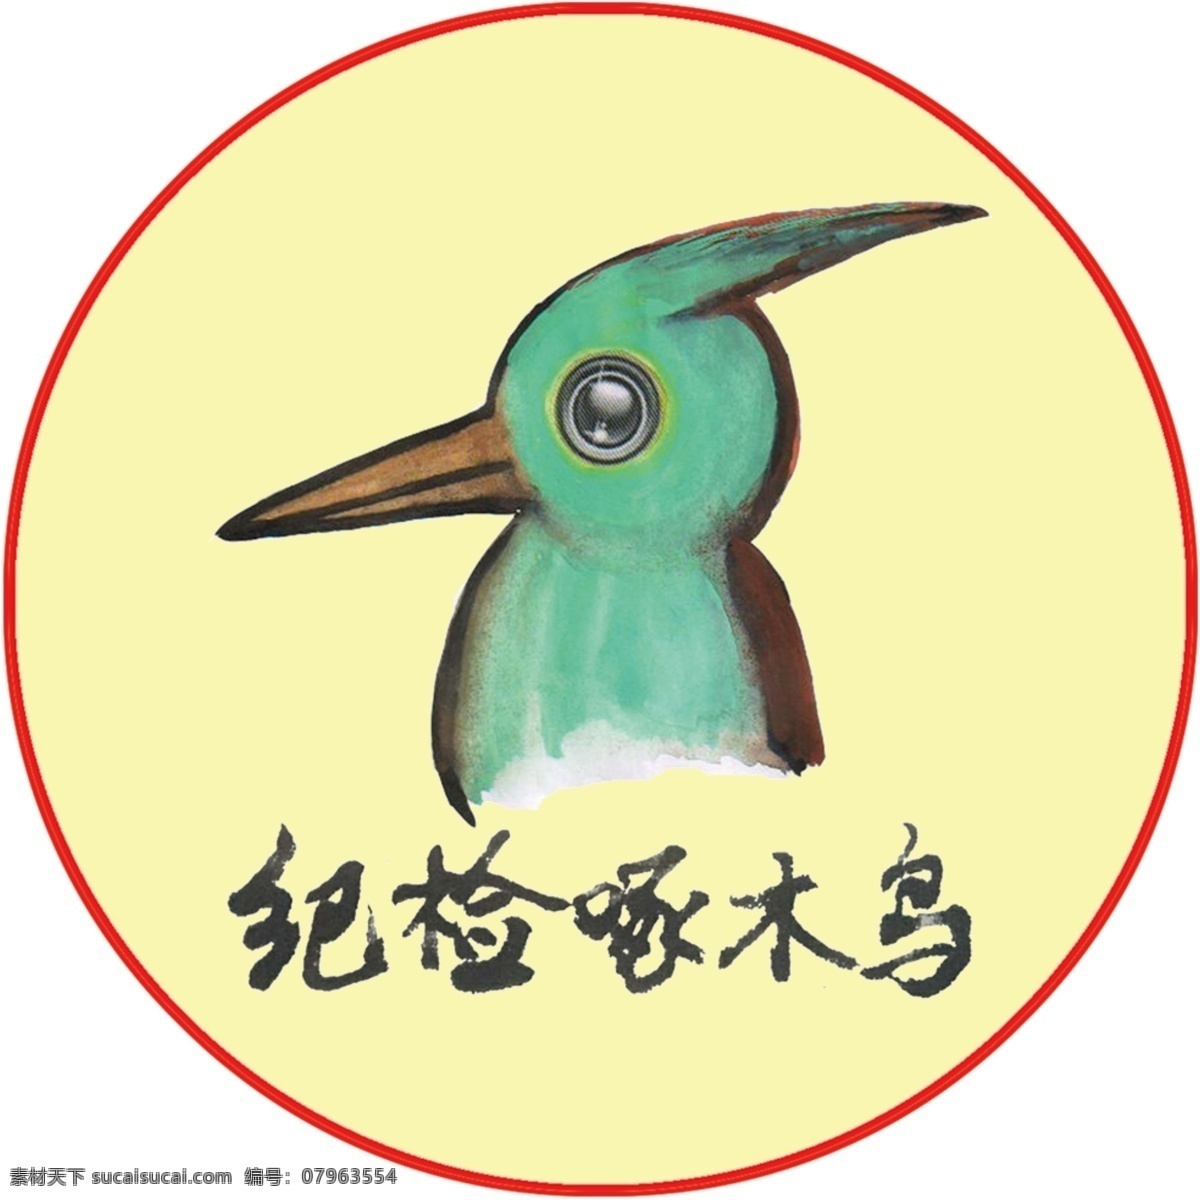 纪检啄木鸟 纪检标志 纪检logo 啄木鸟 logo